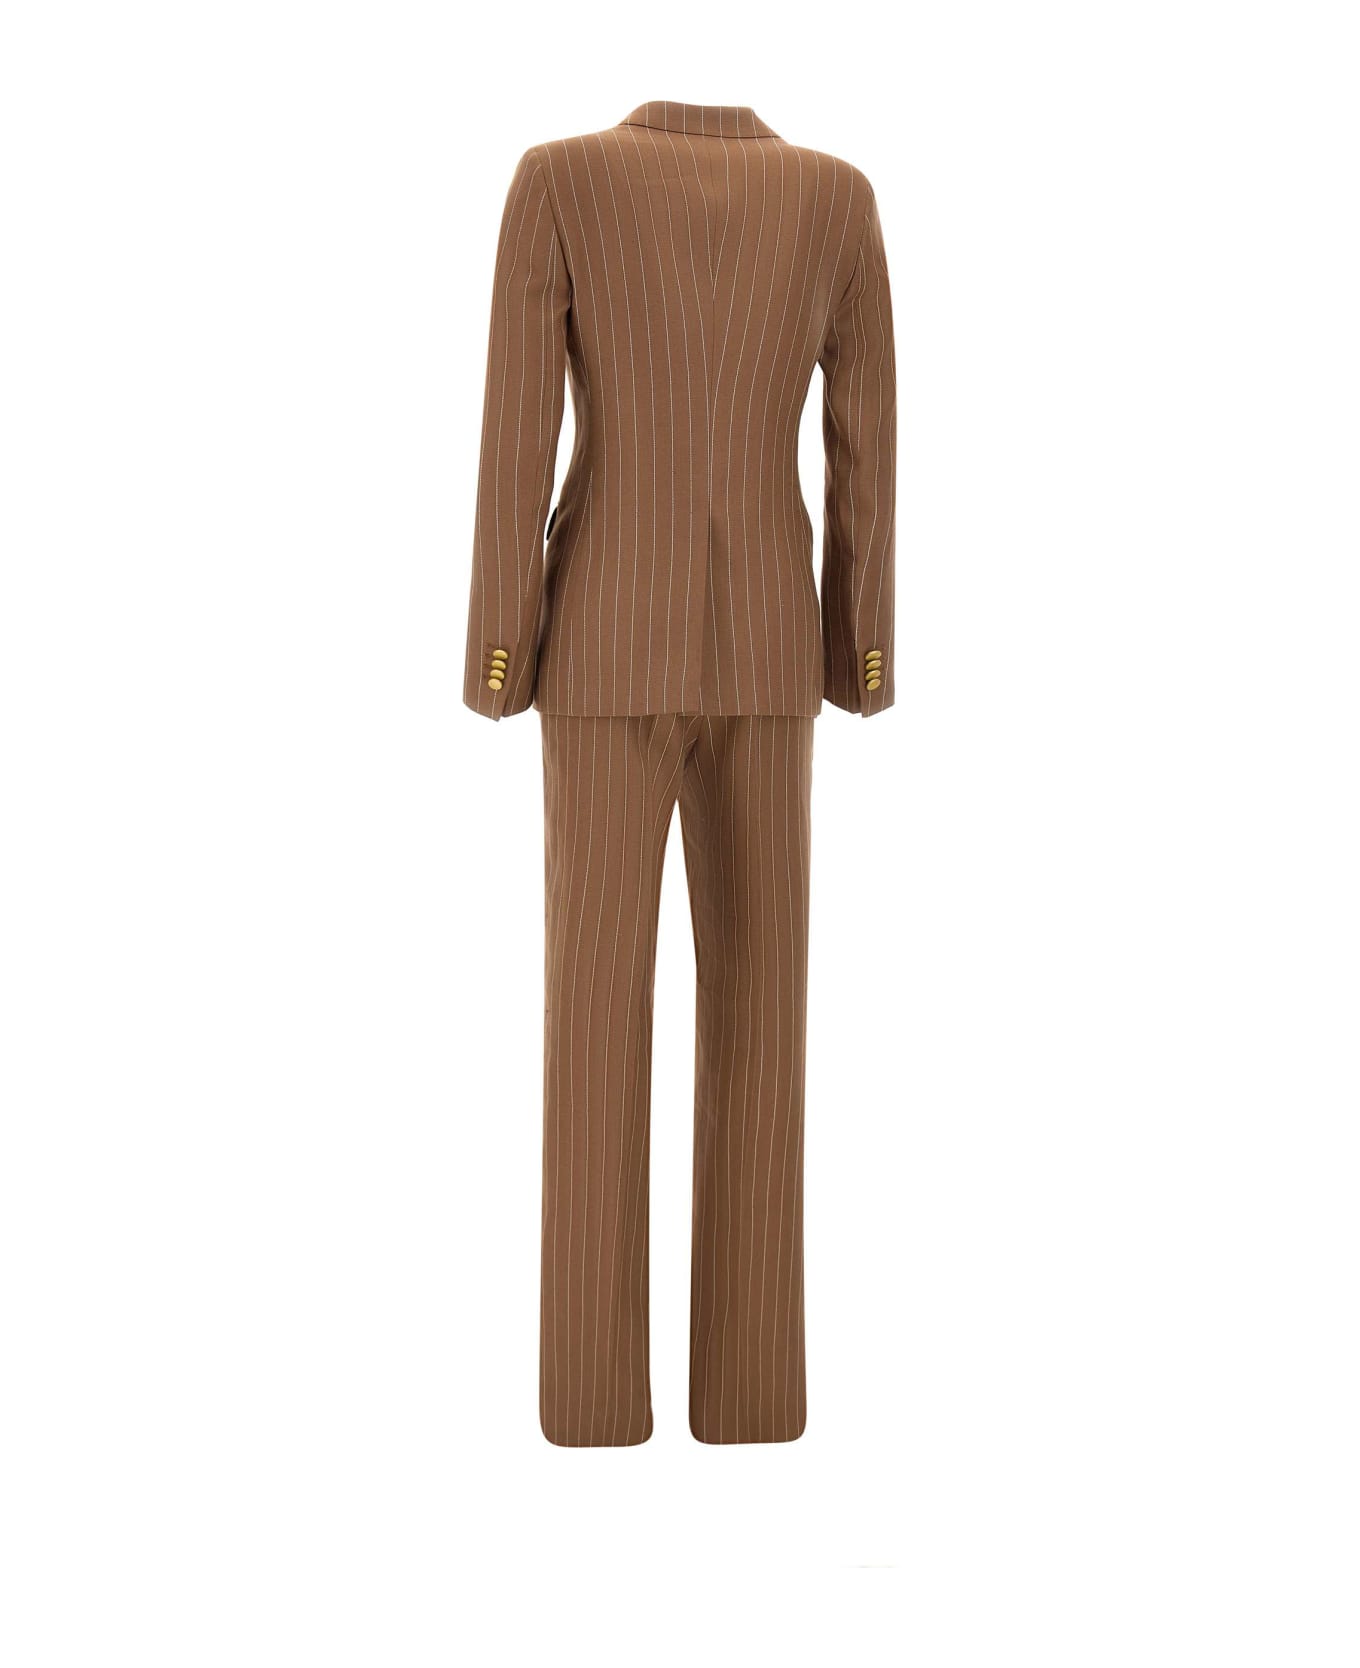 Tagliatore "parigi" Linen Two-piece Suit - BROWN